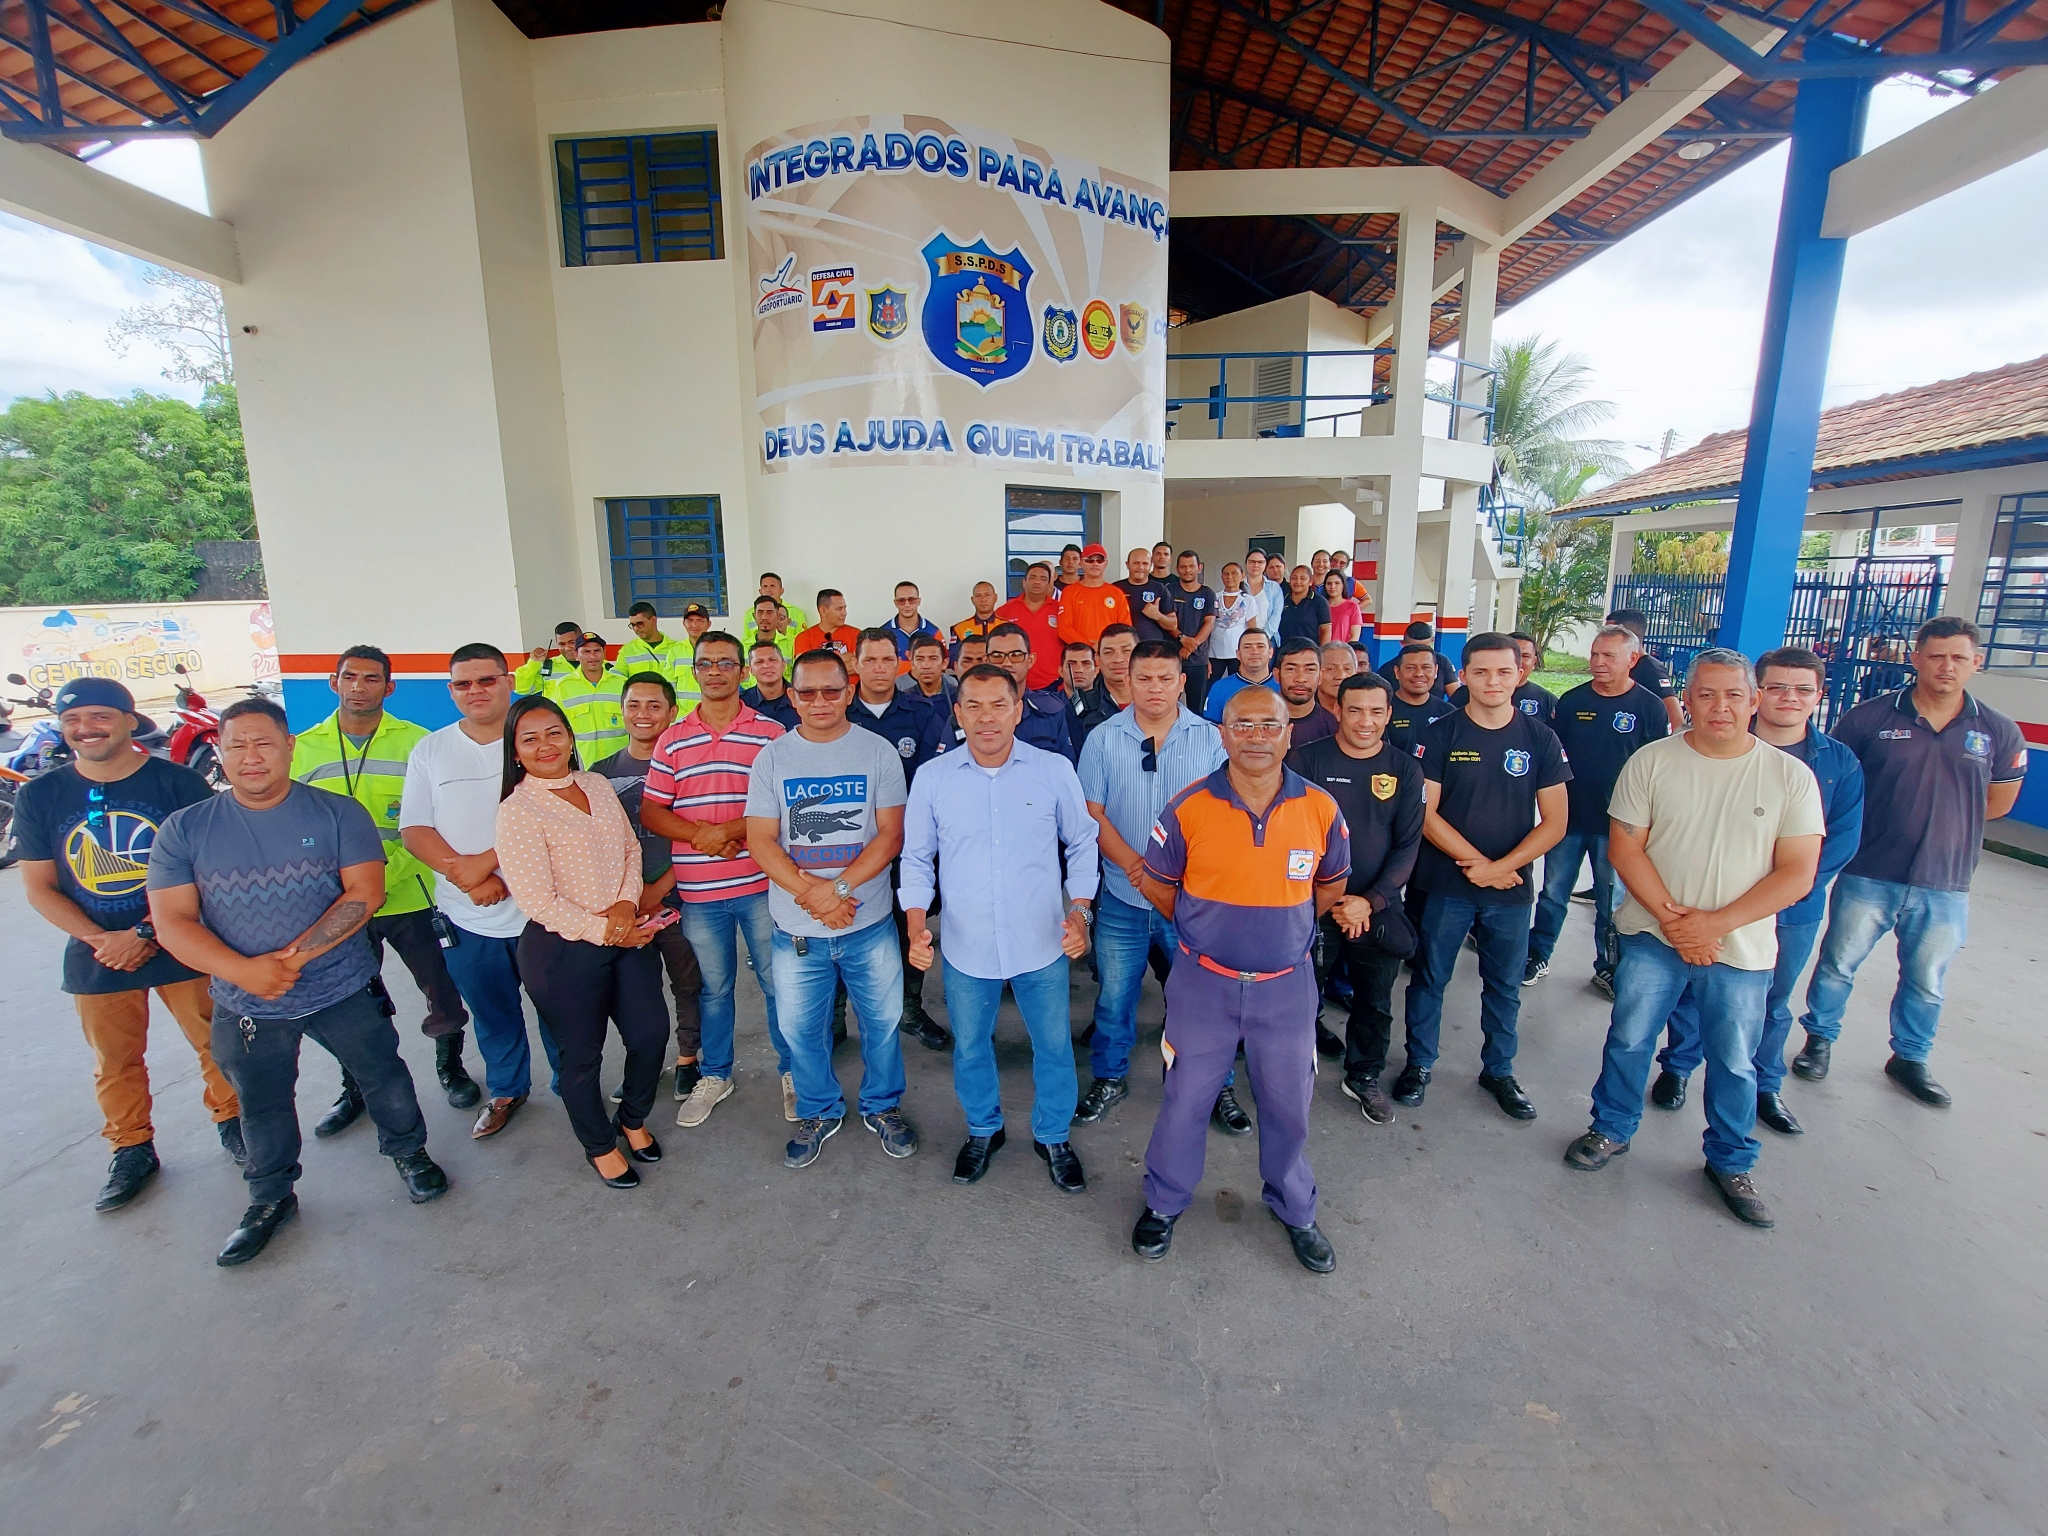 Coari – Durante a gestão como Secretário de Segurança Pública Coronel Afonso Garcia viabilizou materiais de Combate a incêndio